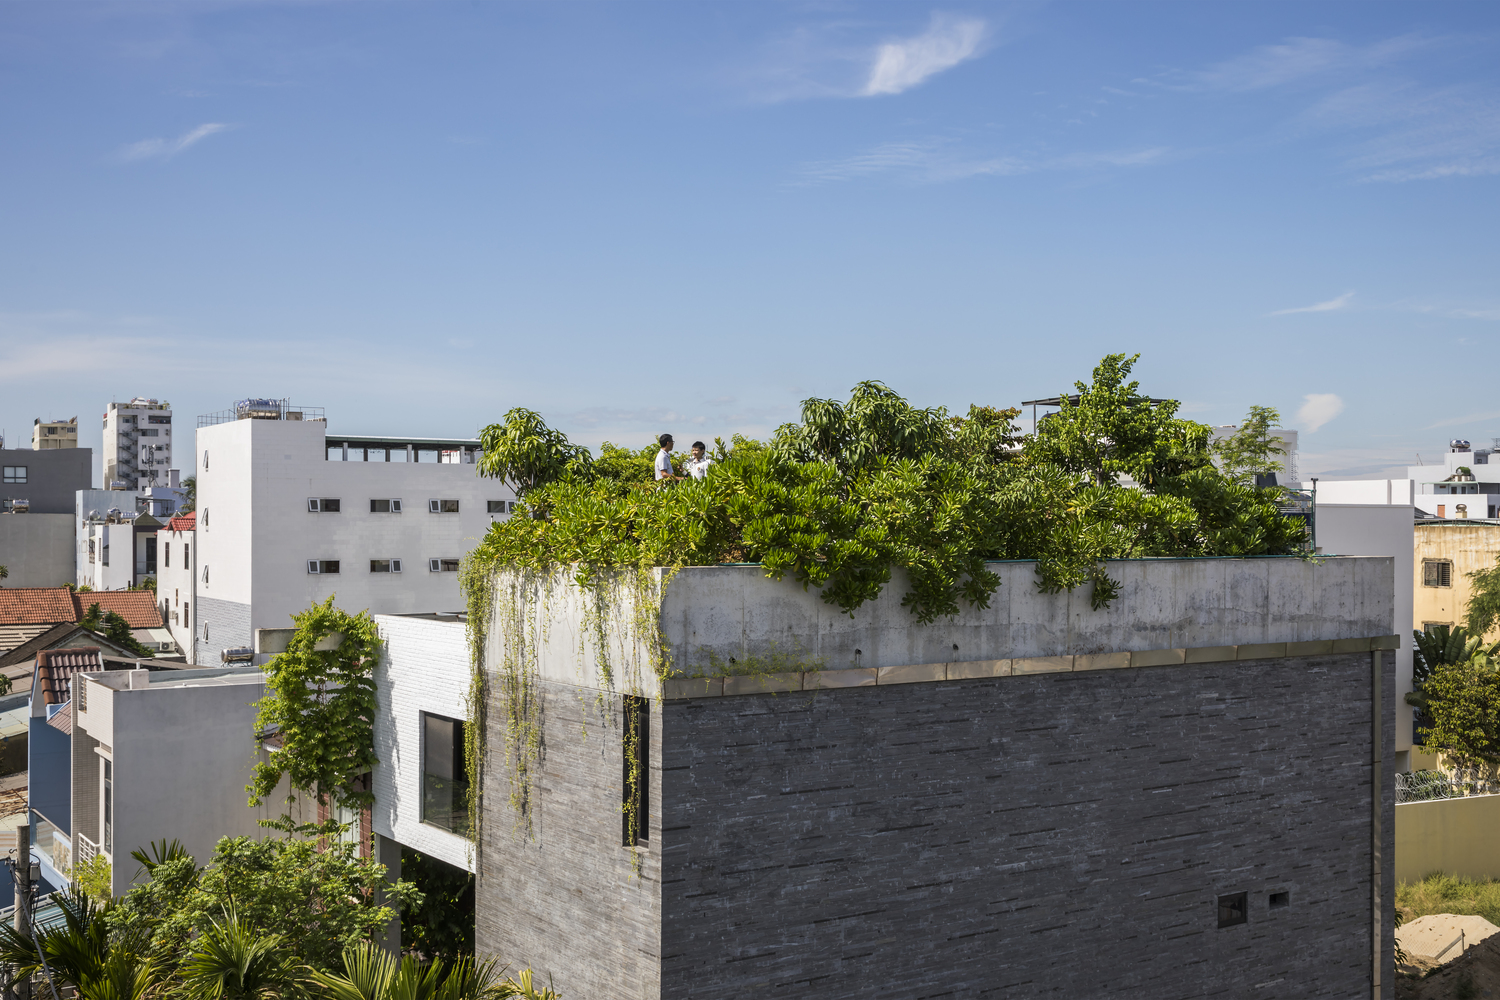 hình ảnh các tầng trên ngôi nhà Thắng ở Đà Nẵng với mái trồng nhiều cây xanh